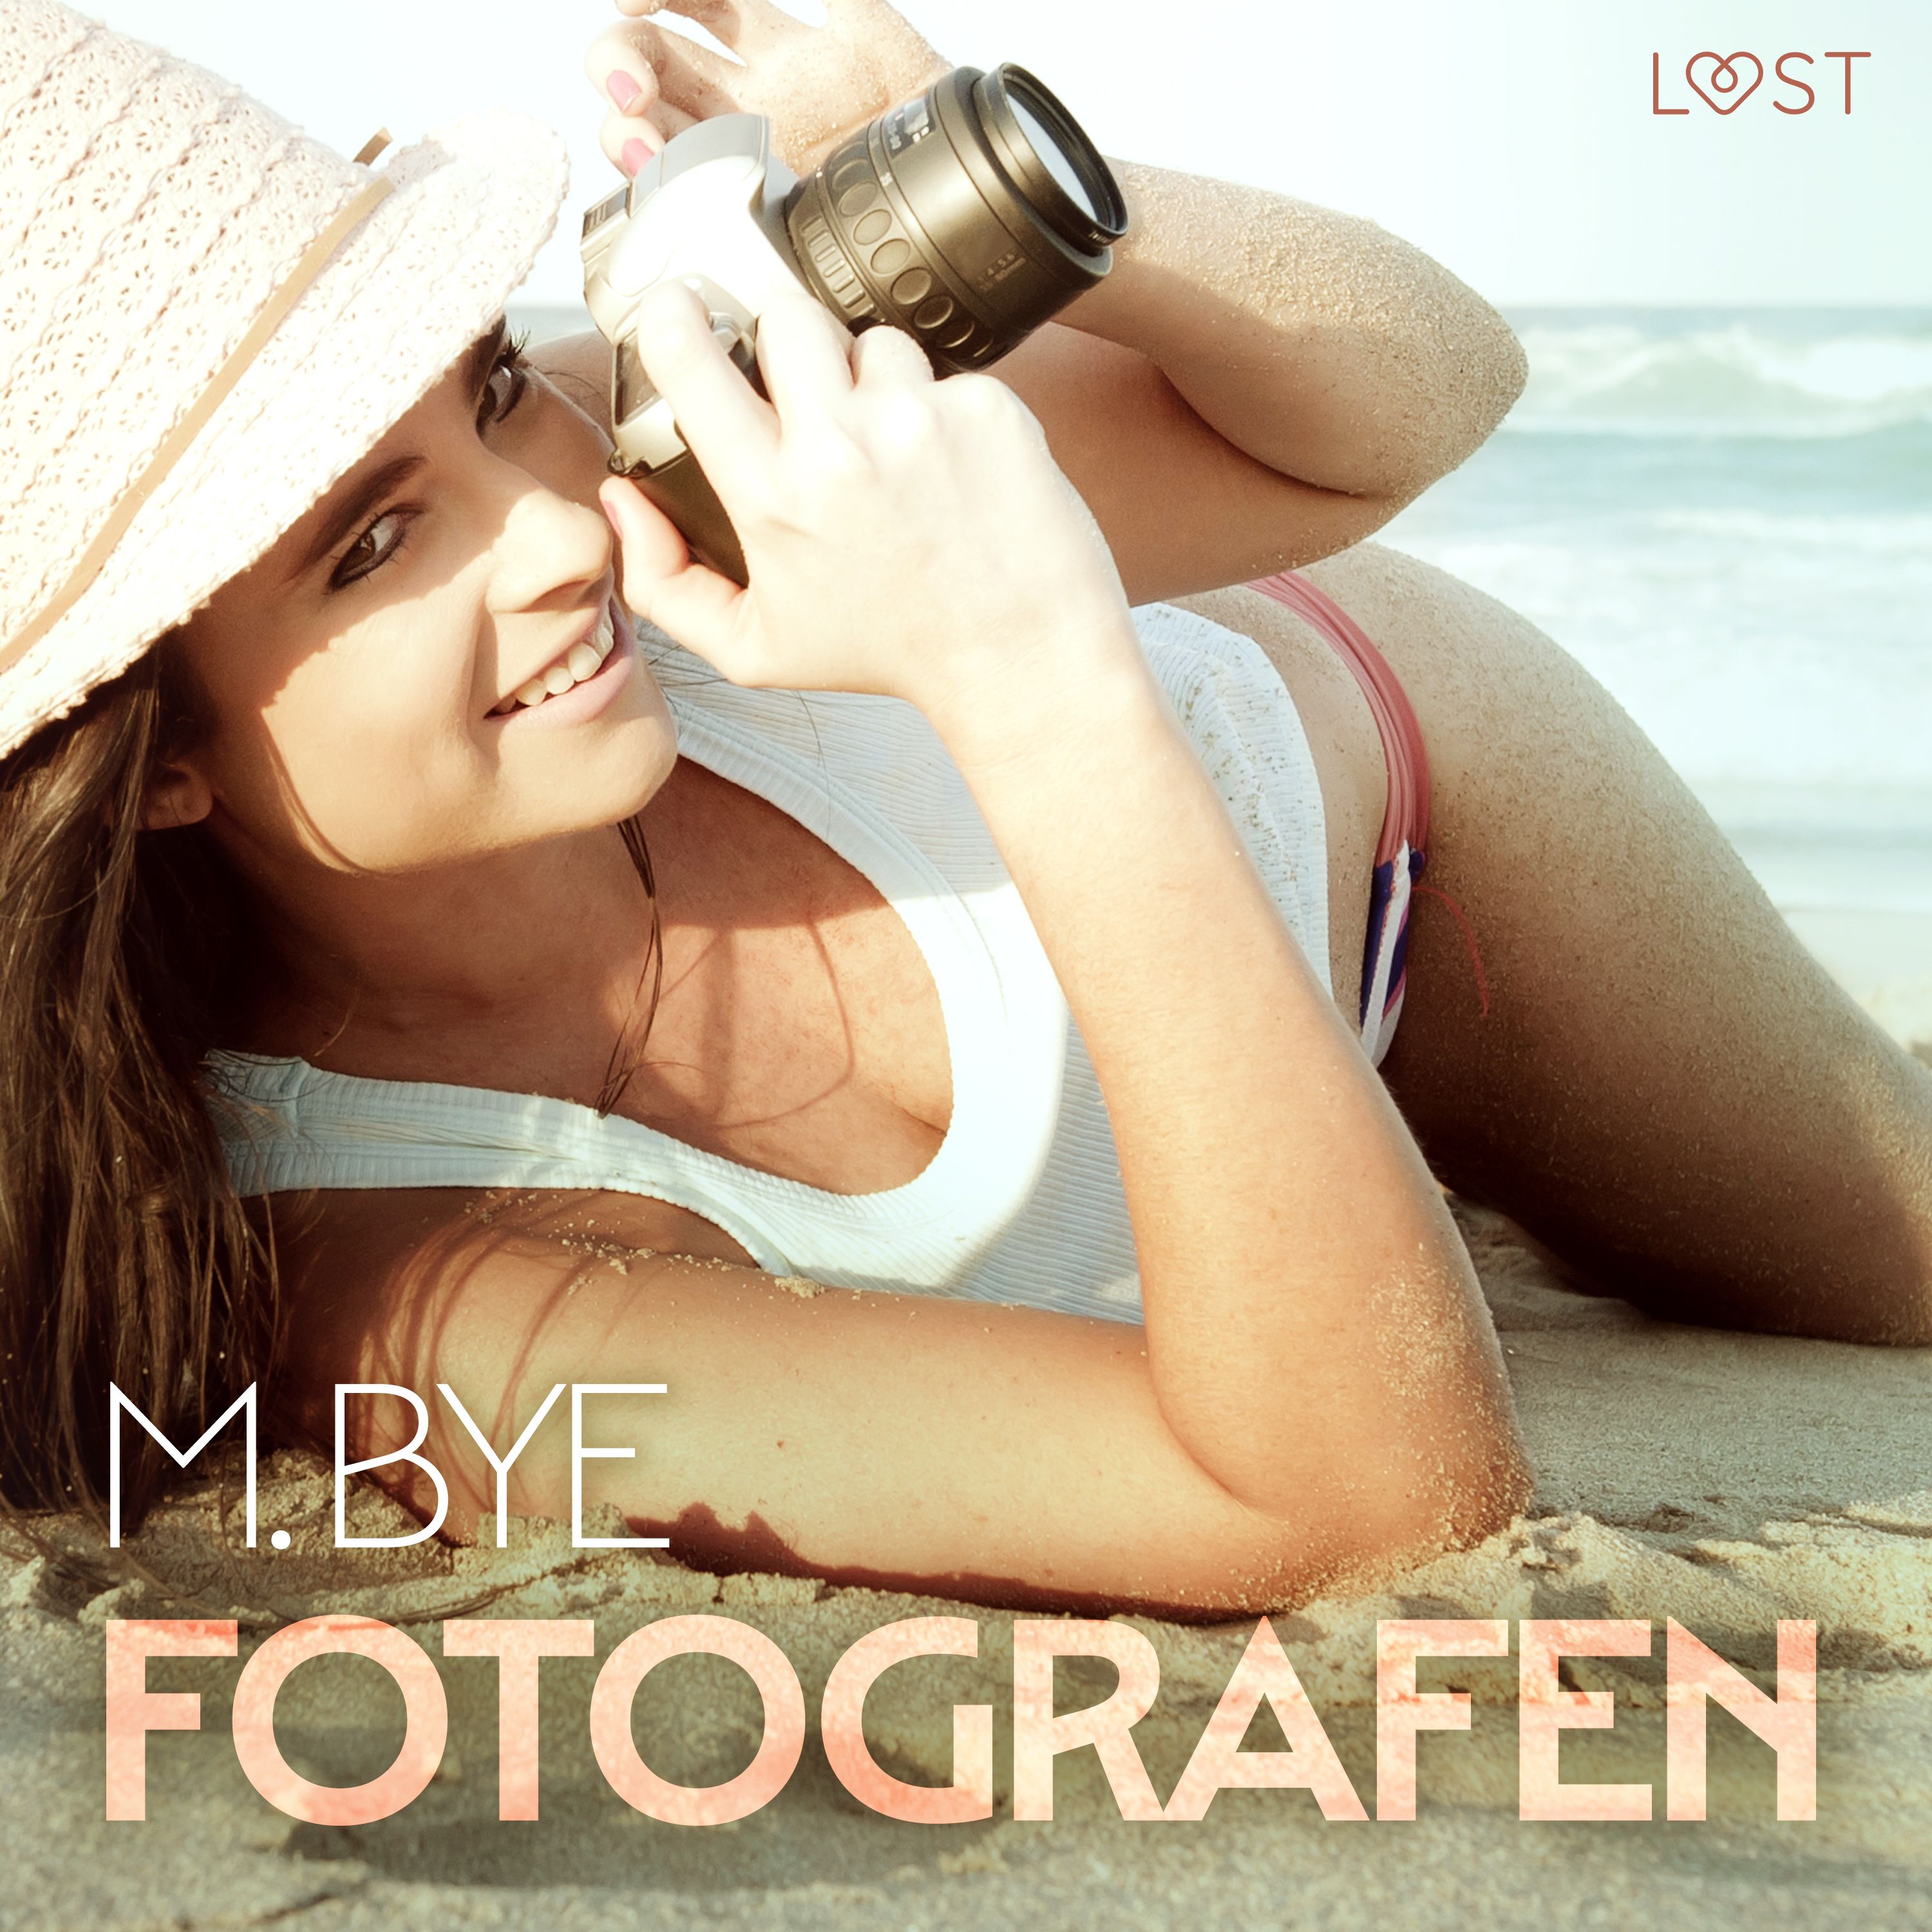 Fotografen - erotisk novelle, lydbog af M. Bye